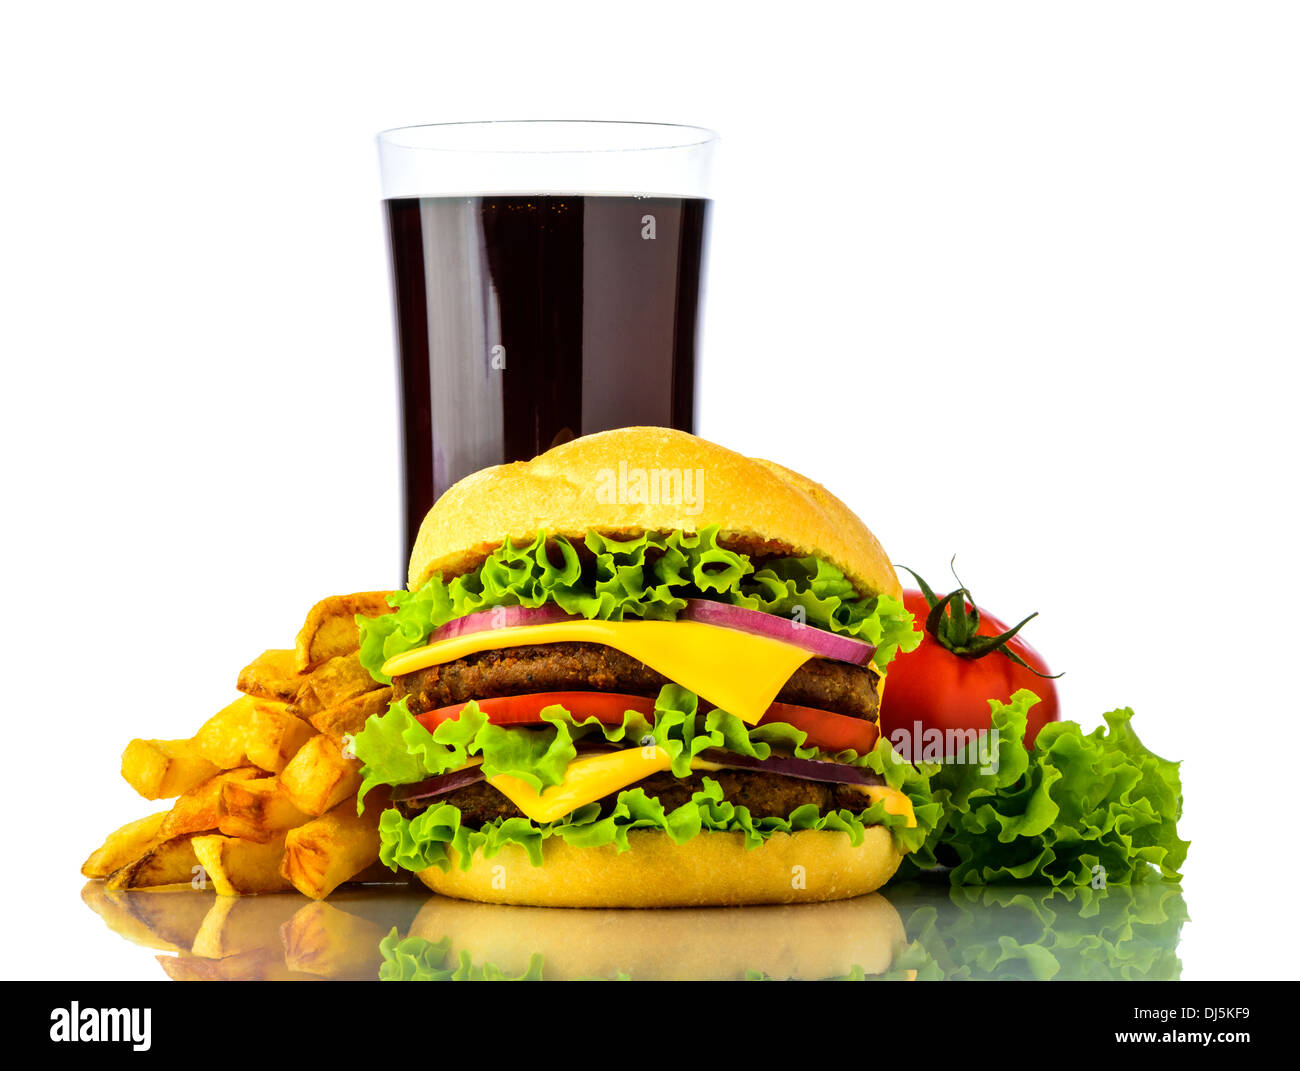 Hamburger menu con cheeseburger, patatine fritte, verdure e cola bere isolato su uno sfondo bianco Foto Stock